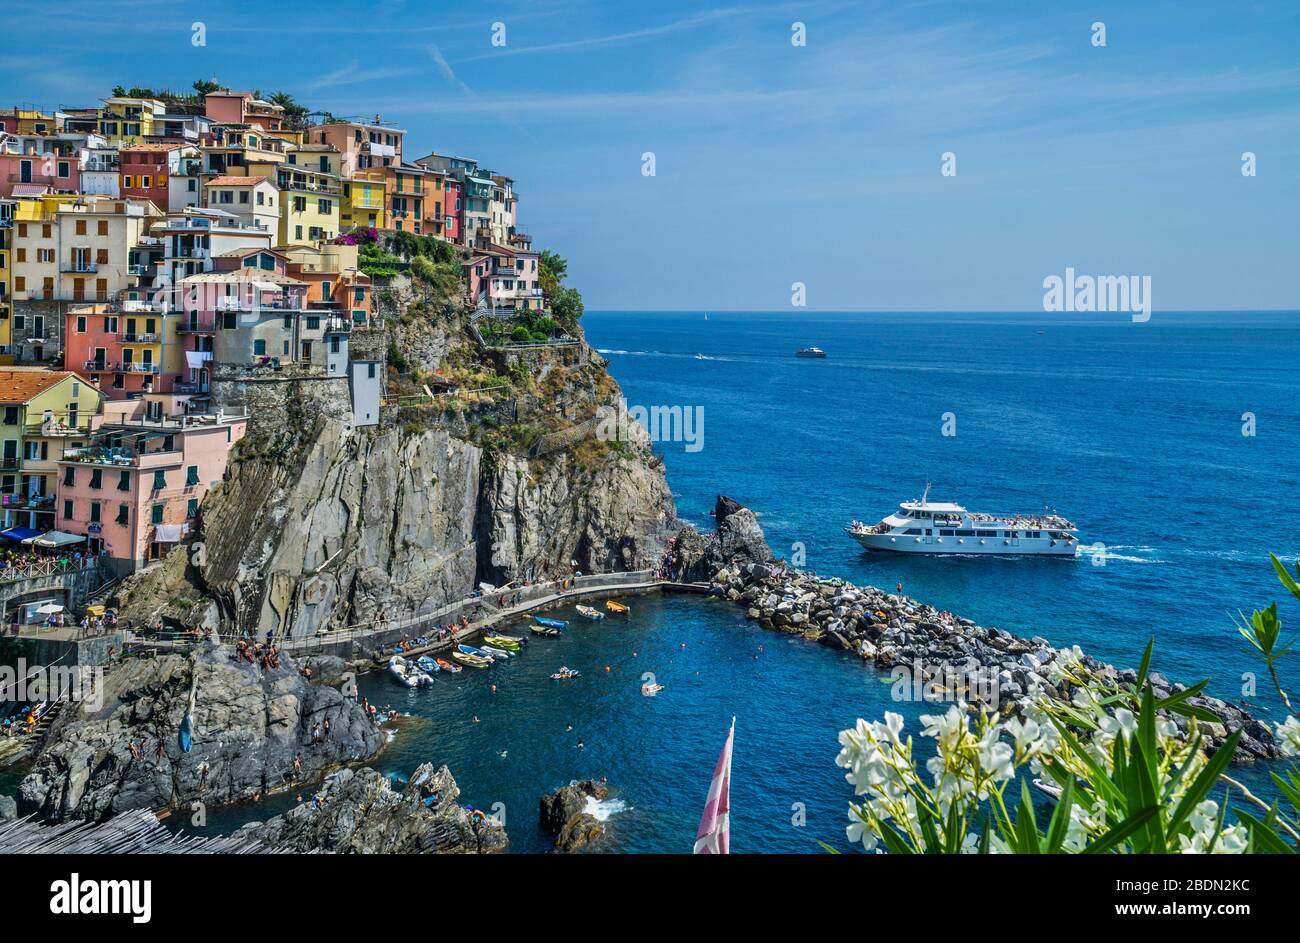 Blick auf das alte Küstendorf Manorola in der Cinque Terre an der ligurischen Riviera di Levante, Ligurien, Italien Stockfoto